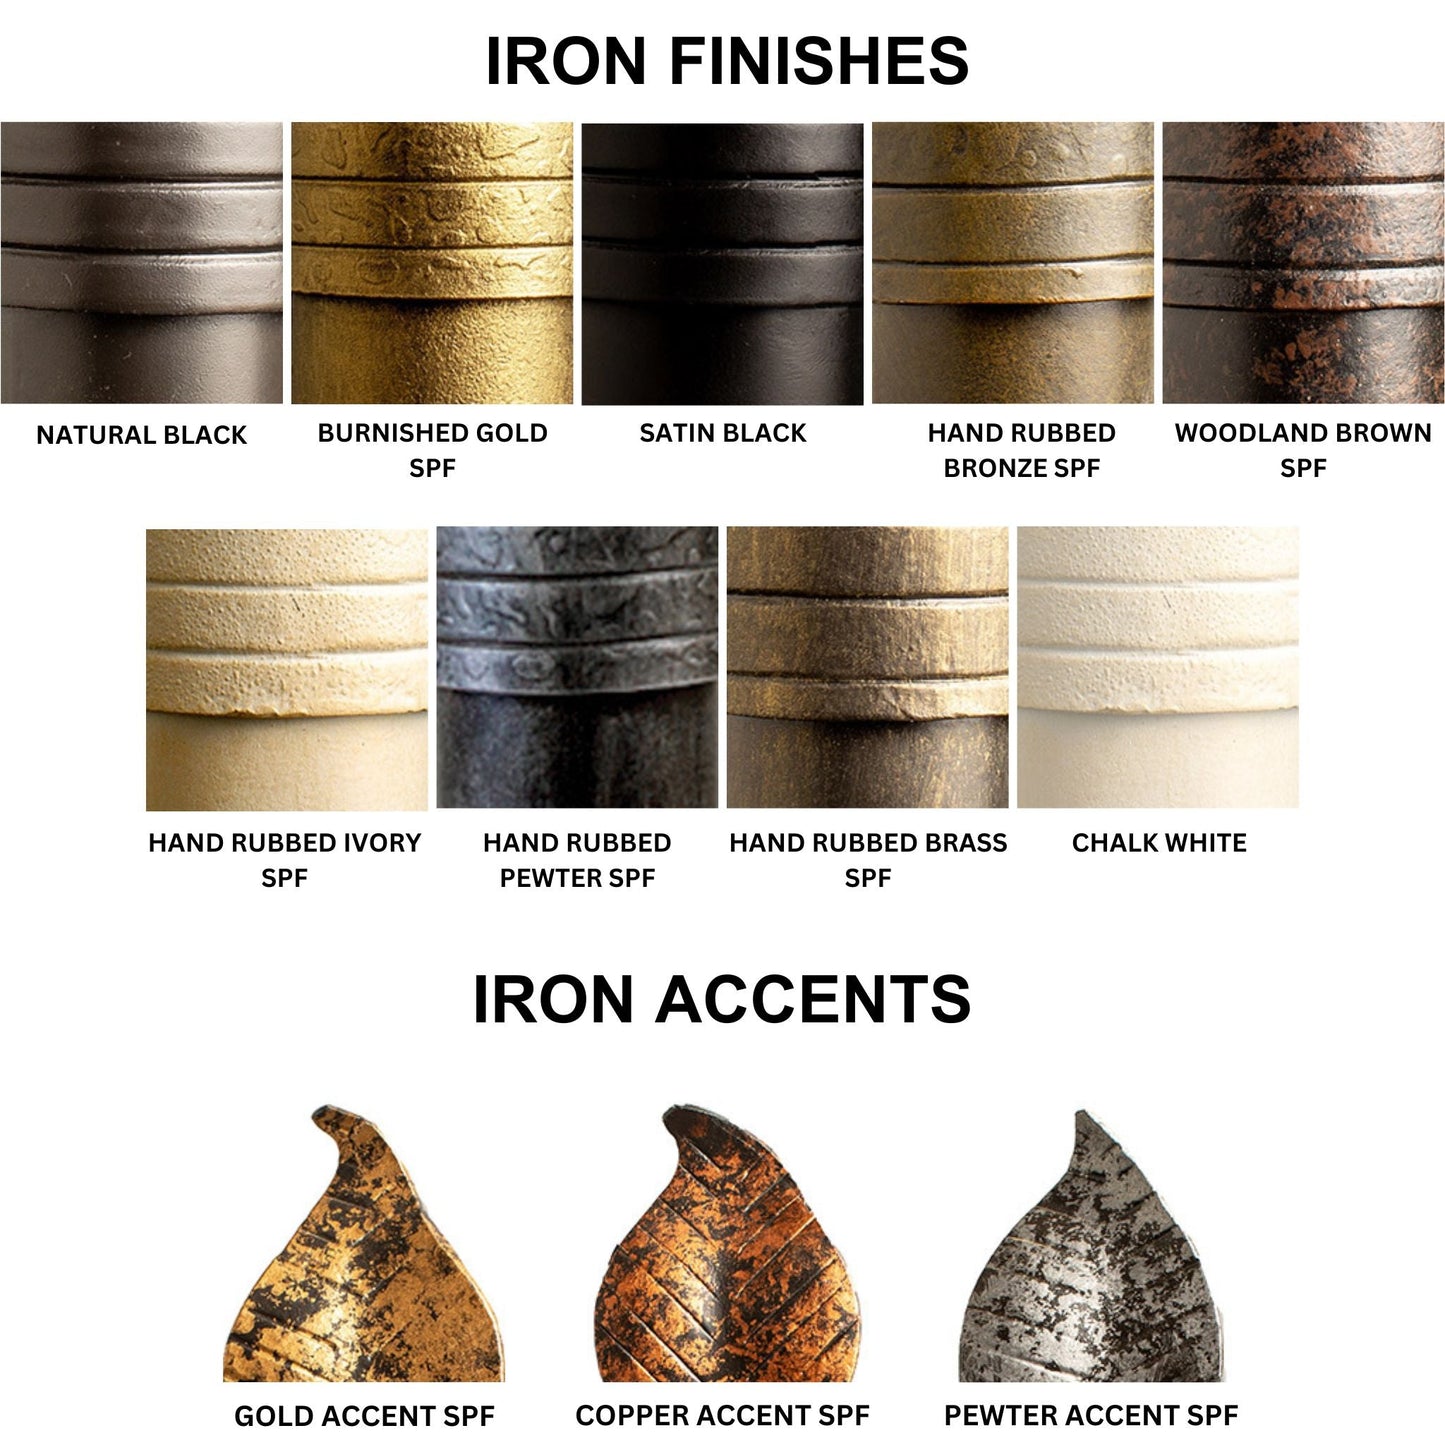 Stone County Ironworks Leaf 32" Burnished Gold Iron Towel Bar